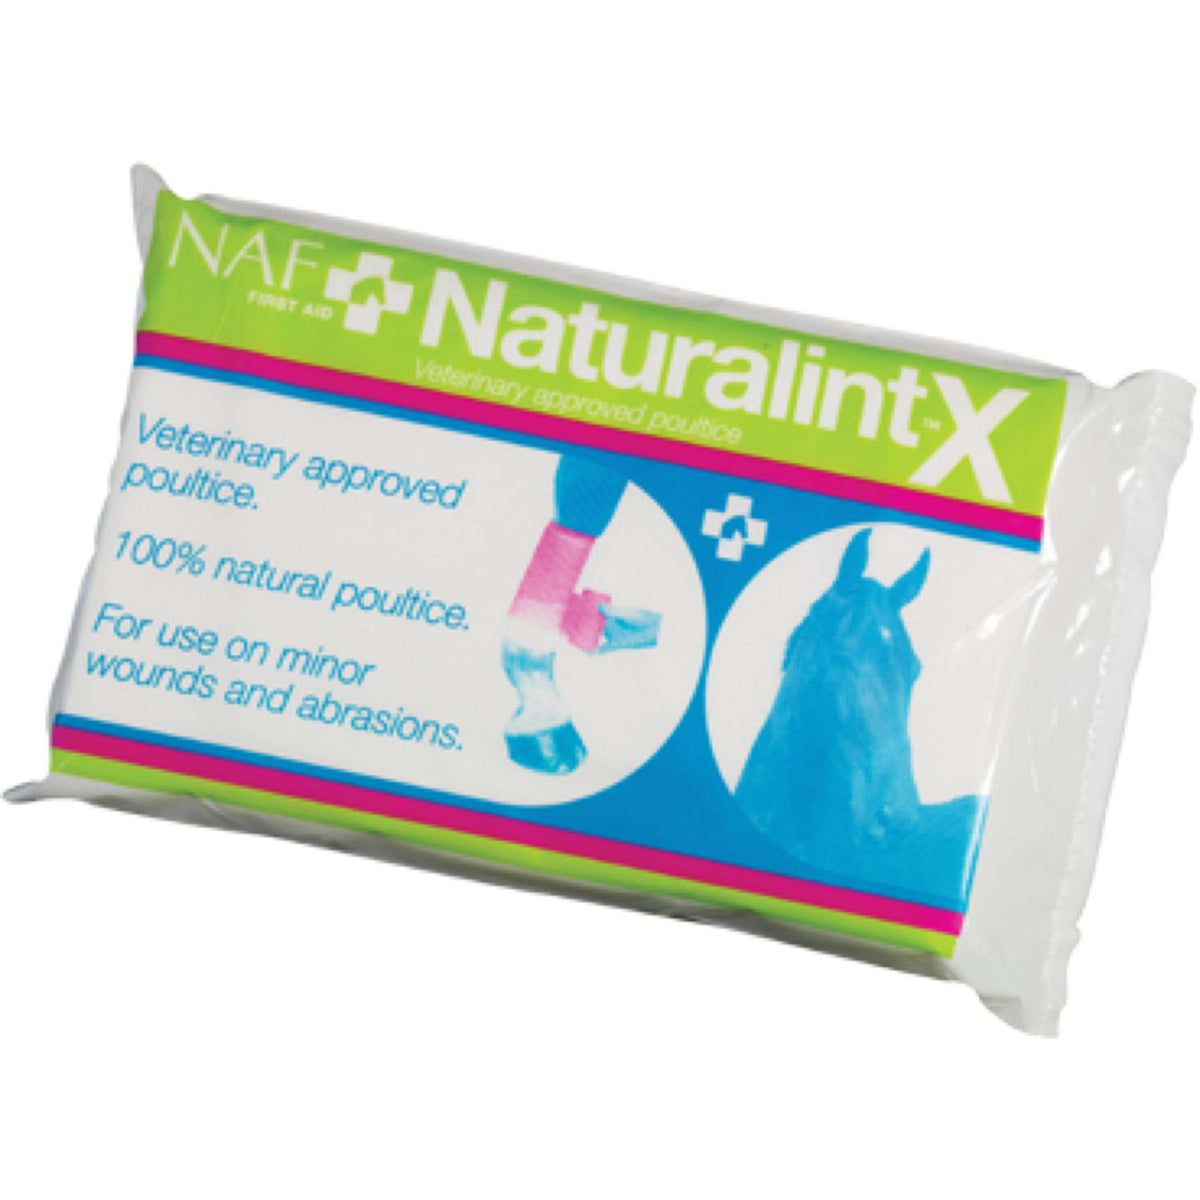 NAF Naturalintx Compres